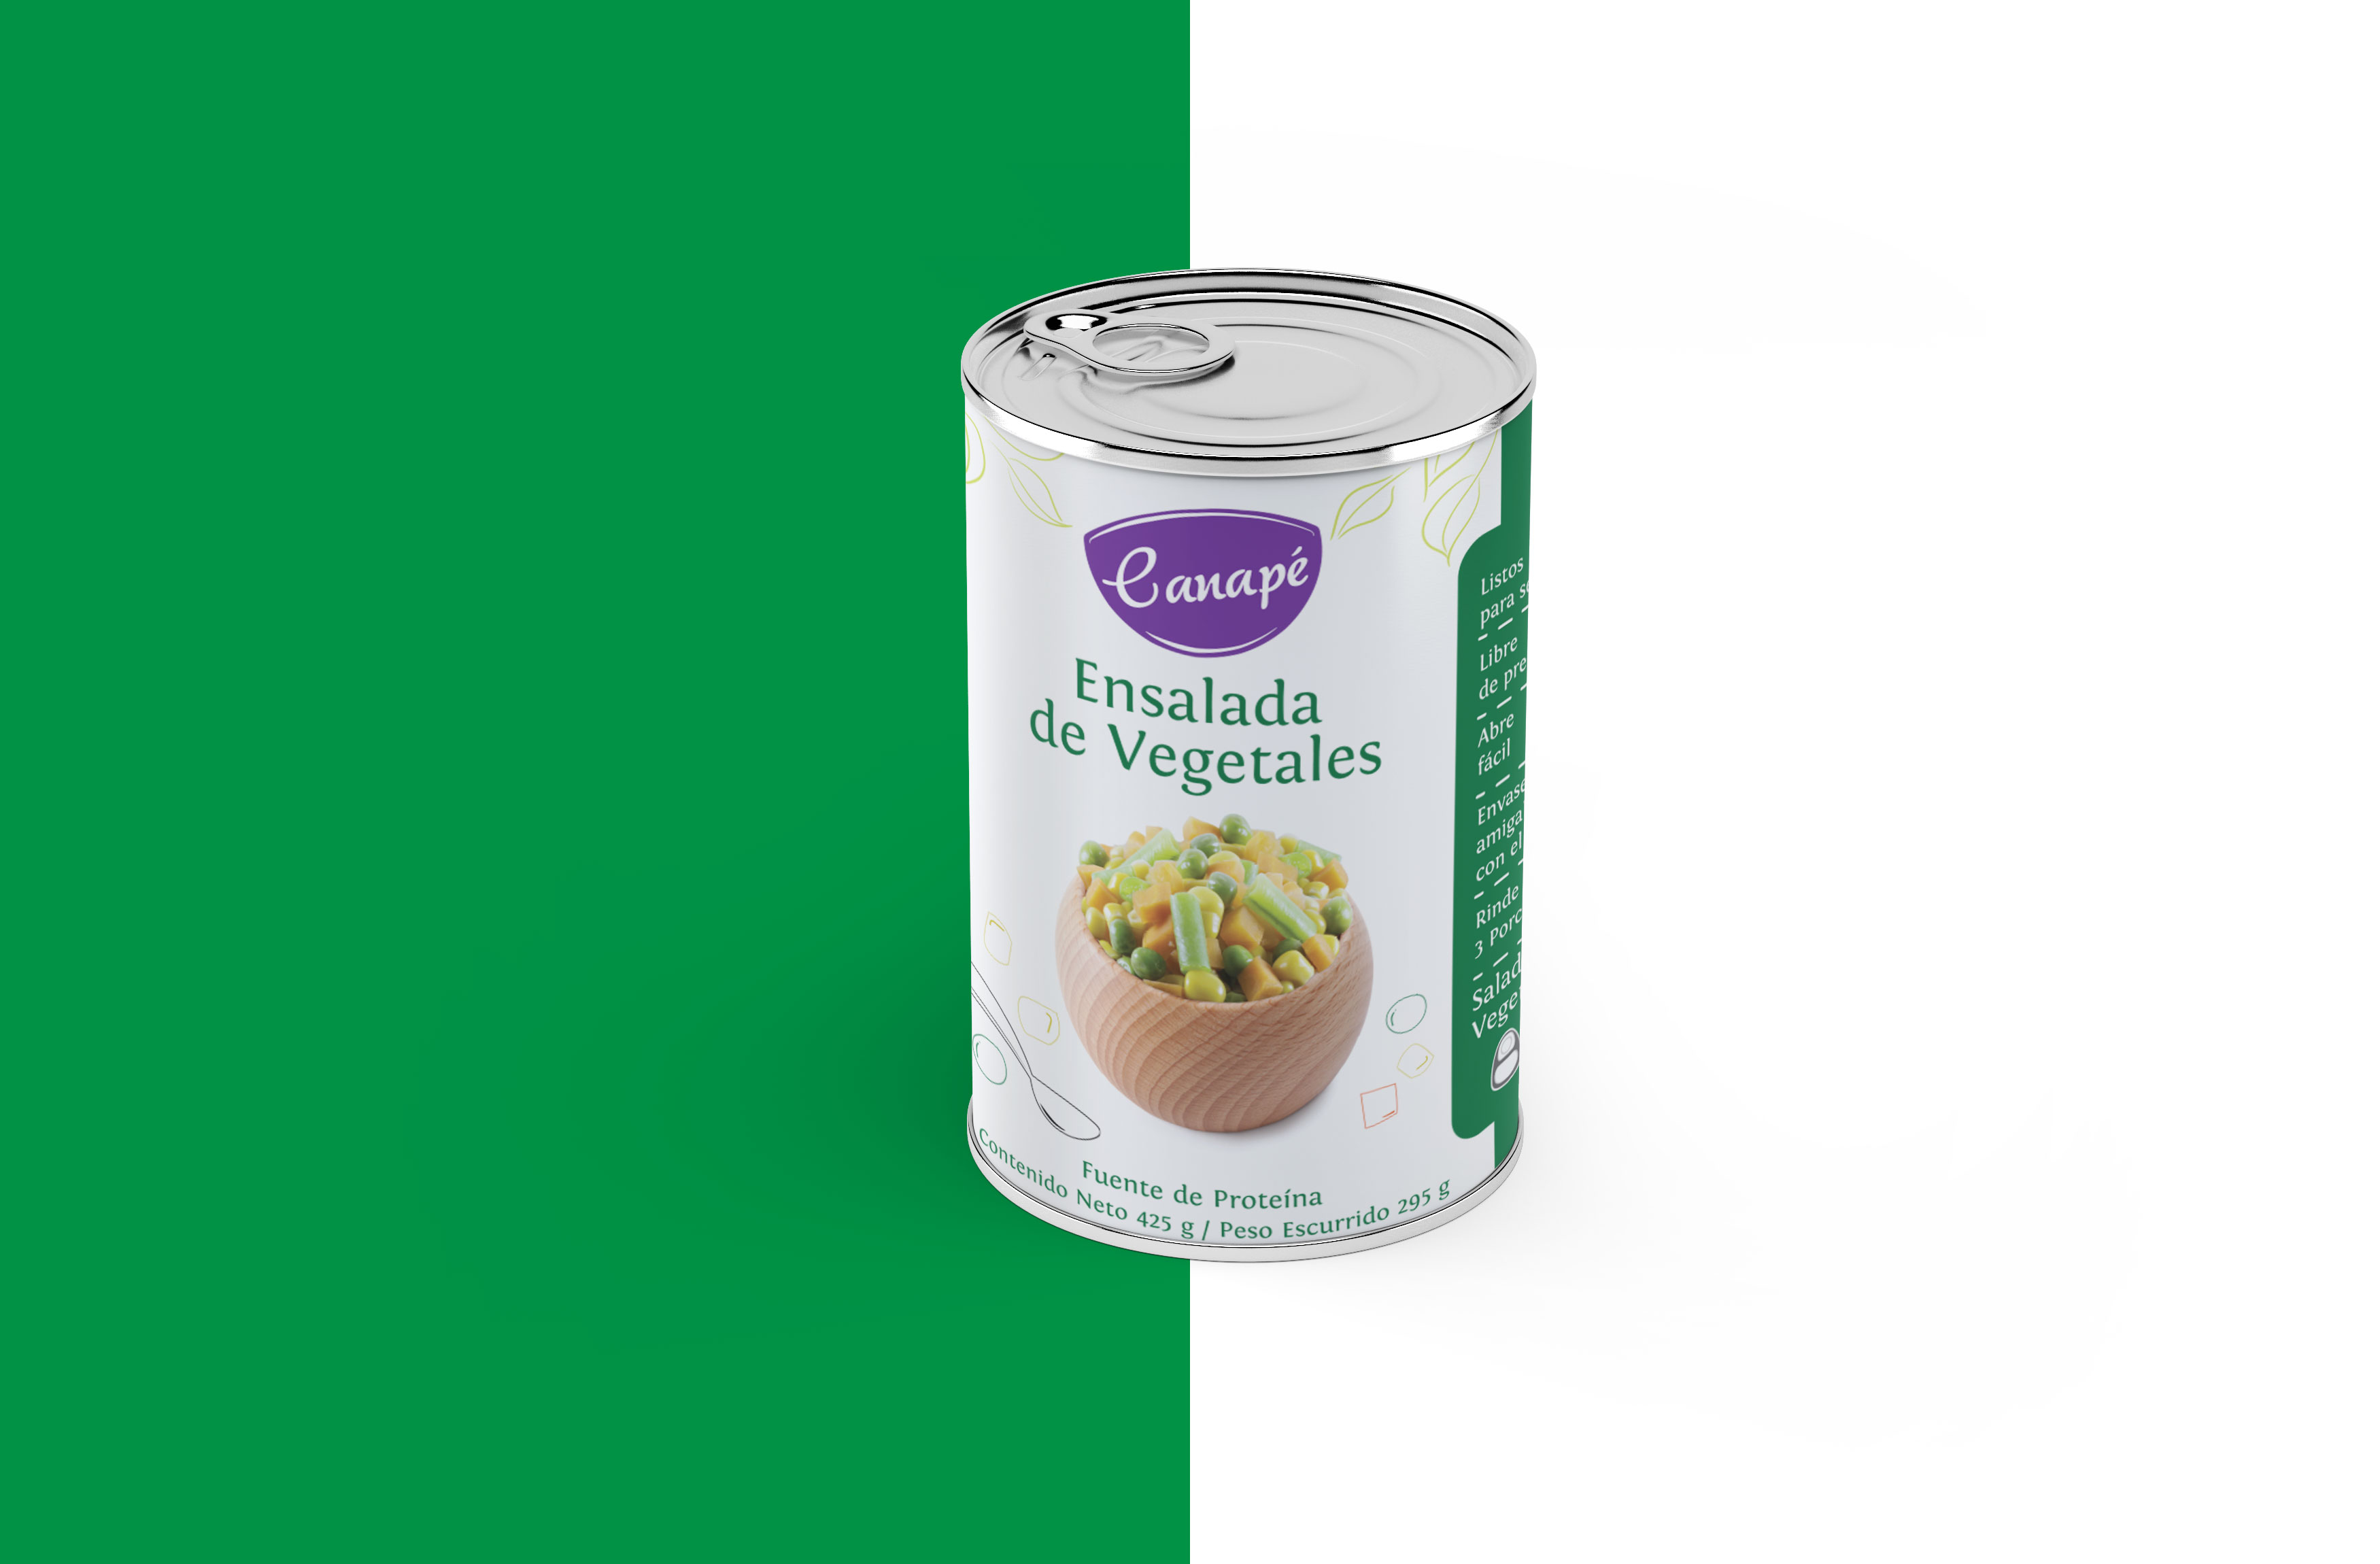 Diseño de etiqueta - Canapé ensalada vegetales